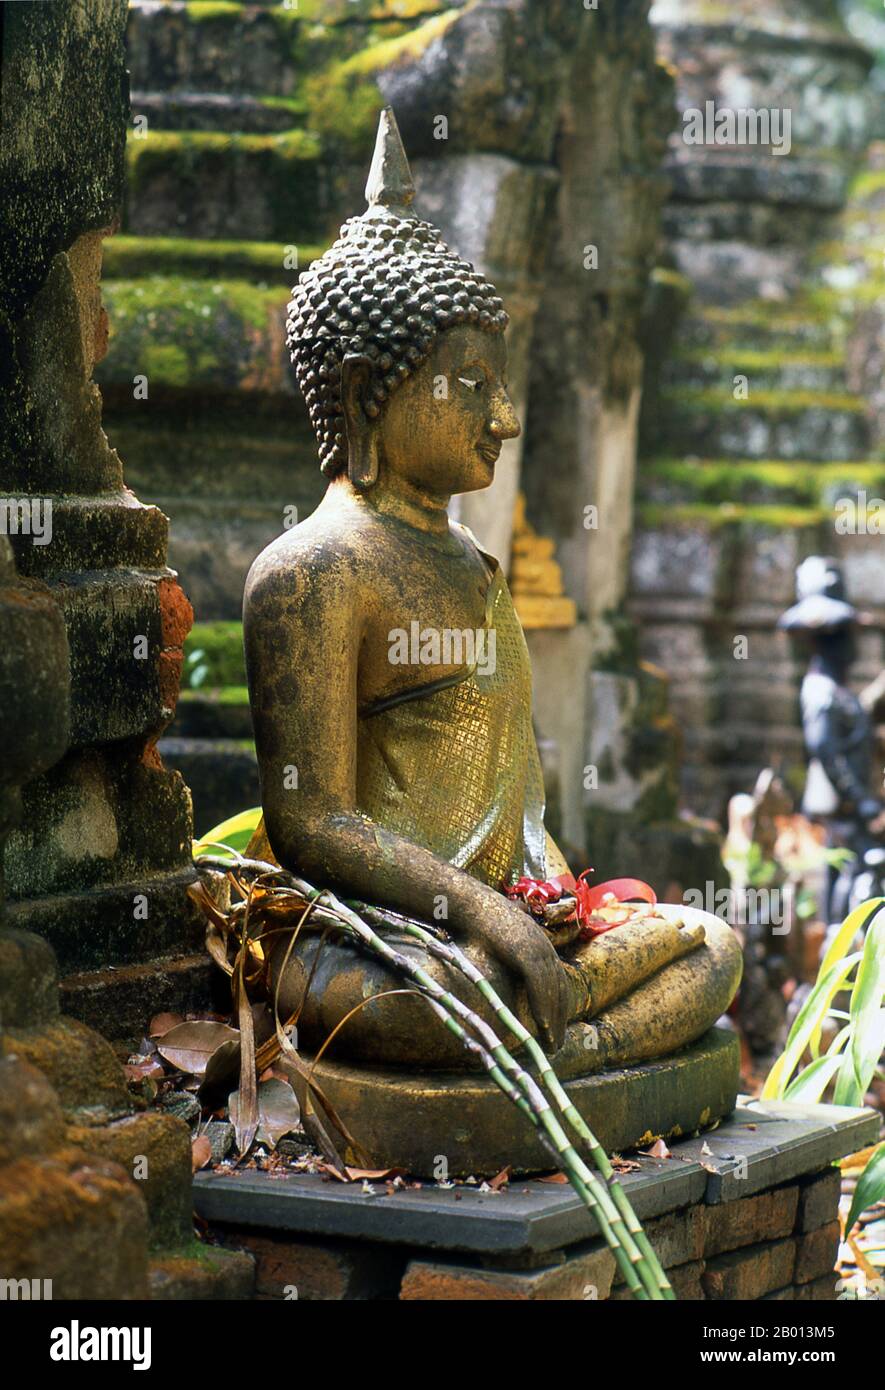 Thailandia: Buddha, Wat Chom Sawan, Phrae, Thailandia del Nord. Wat Chom Sawan (Jom Sawan) è un tempio Shan della fine del XIX secolo, con elementi architettonici sia di Shan che birmani. Phrae fu costruito accanto al fiume Yom nel 12 ° secolo e faceva parte del regno Mon di Haripunchai. Nel 1443, il re Tilokaraj del vicino regno Lanna catturò la città. Foto Stock